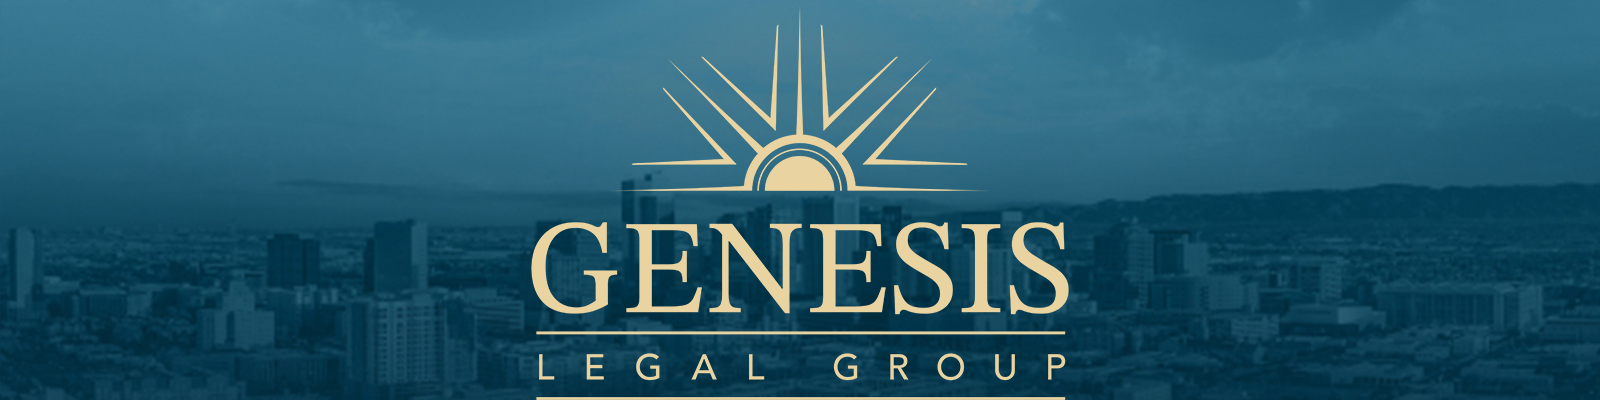 Genesis Legal Group